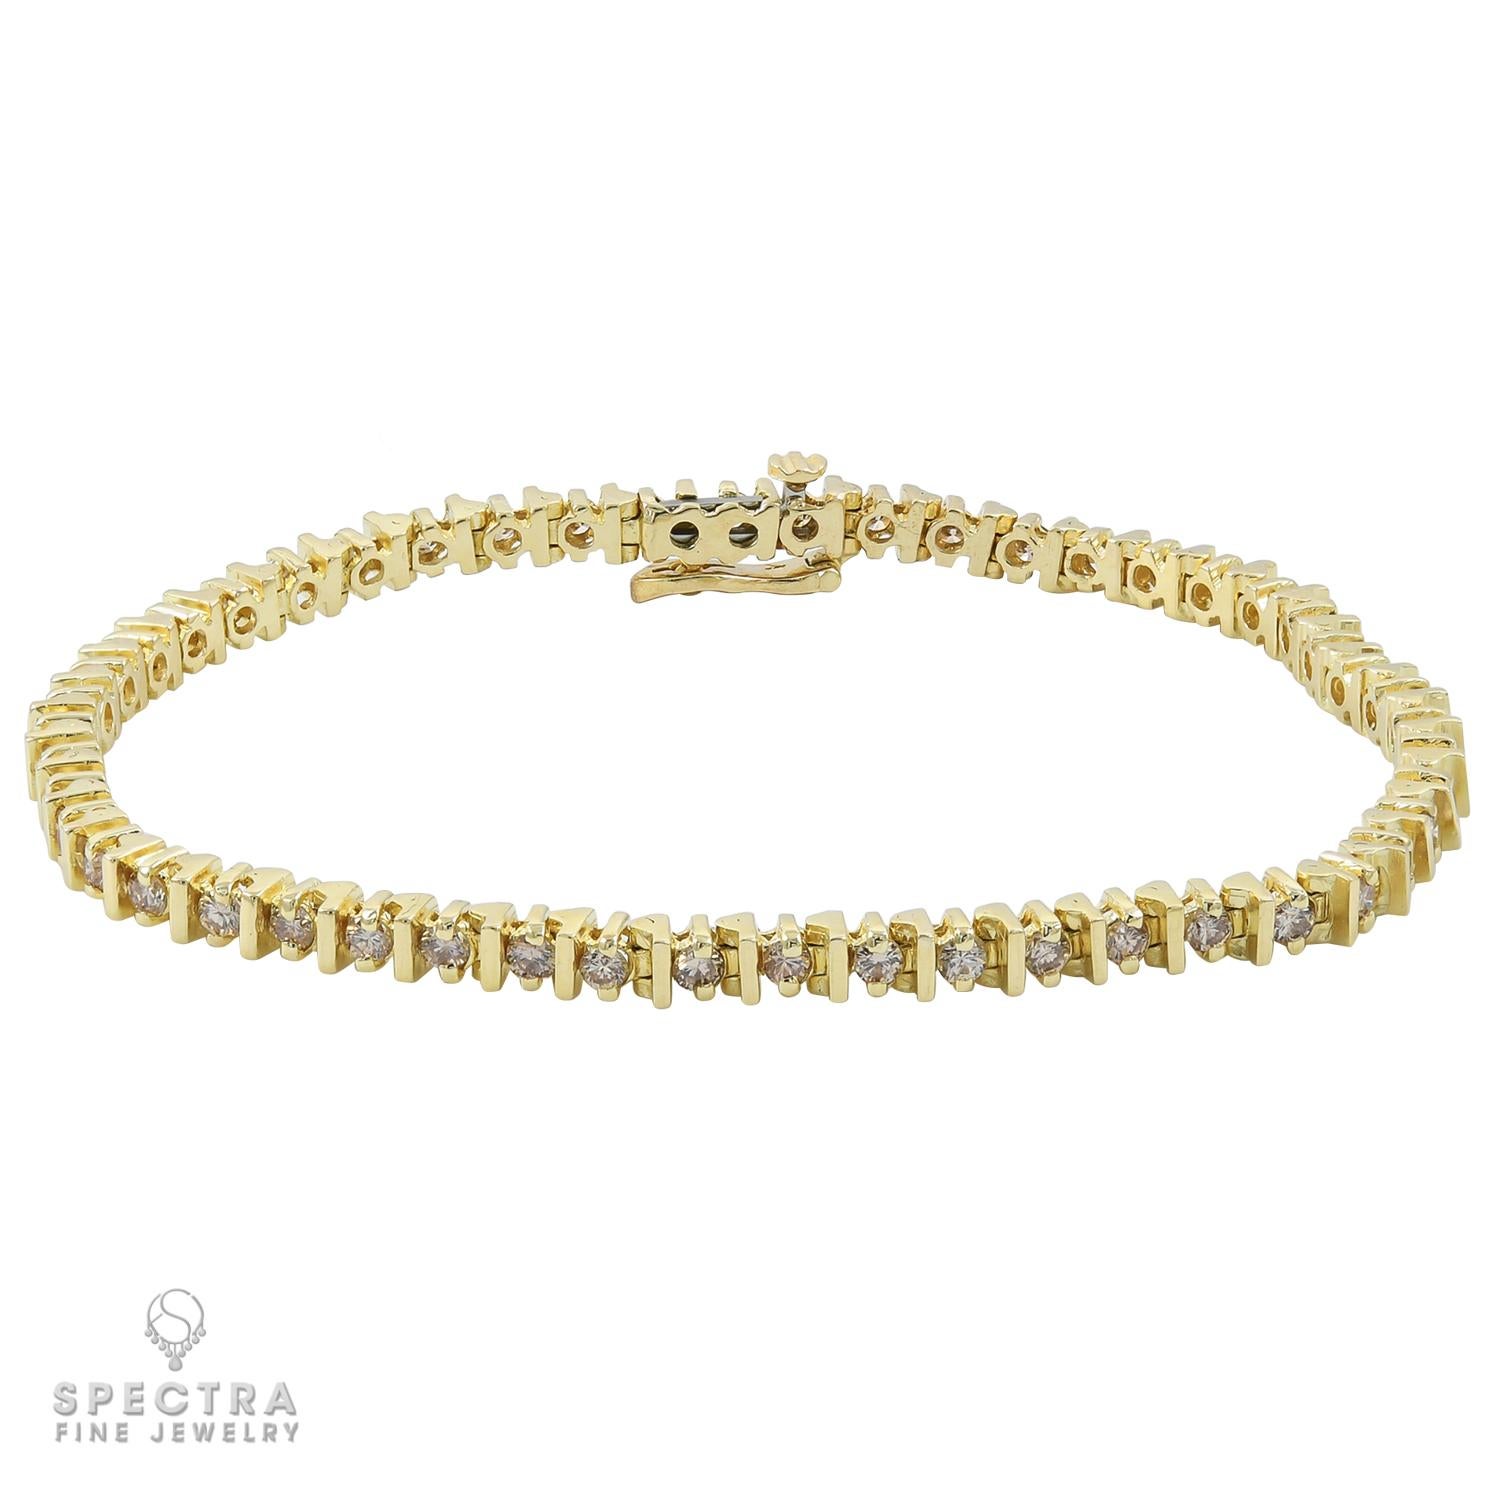 Un bracelet de tennis composé de 50 diamants pesant au total 2,5 carats. Chaque diamant pèse 0,05 carat.
Les diamants sont naturels, non certifiés, de couleur H-I et de pureté VS-SI.
7,25 pouces de long.
Le métal est de l'or jaune 14k, poids brut